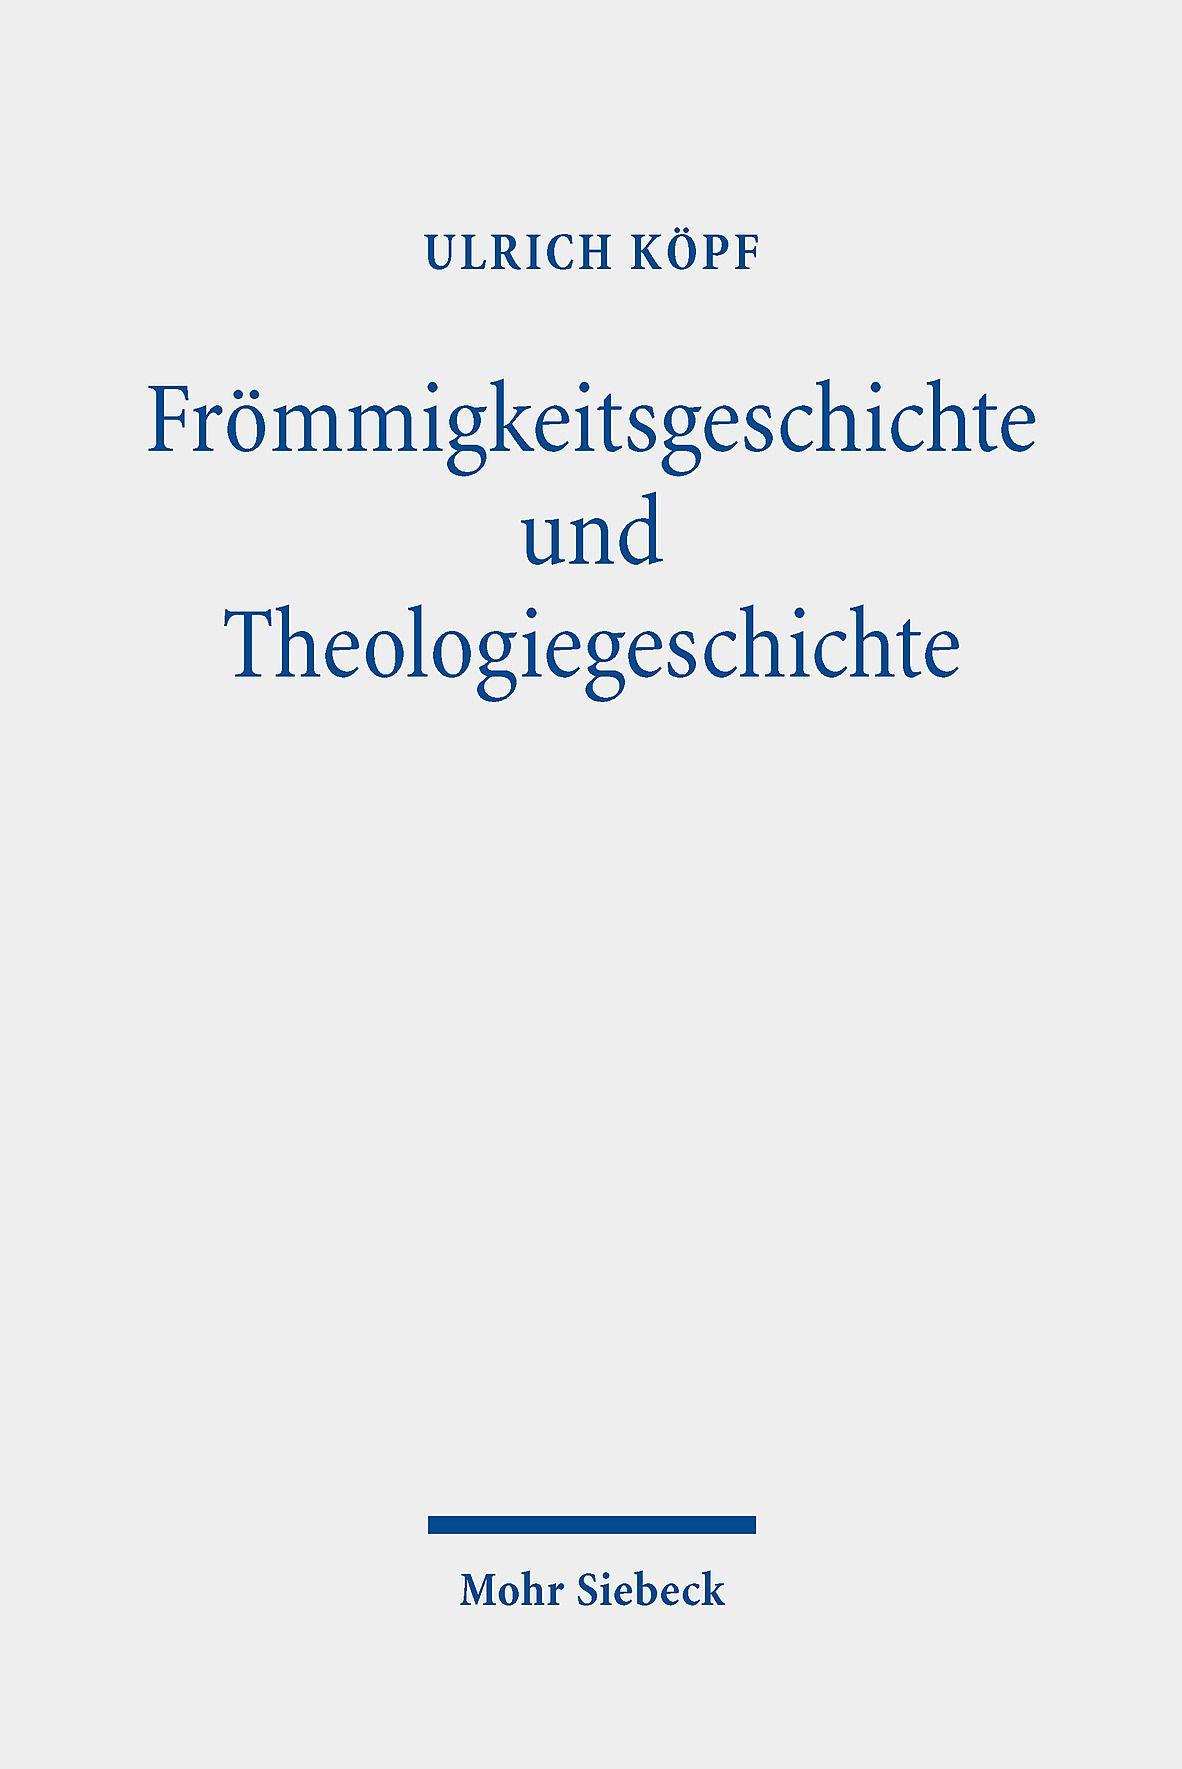 Froemmigkeitsgeschichte und Theologiegeschichte - Köpf, Ulrich